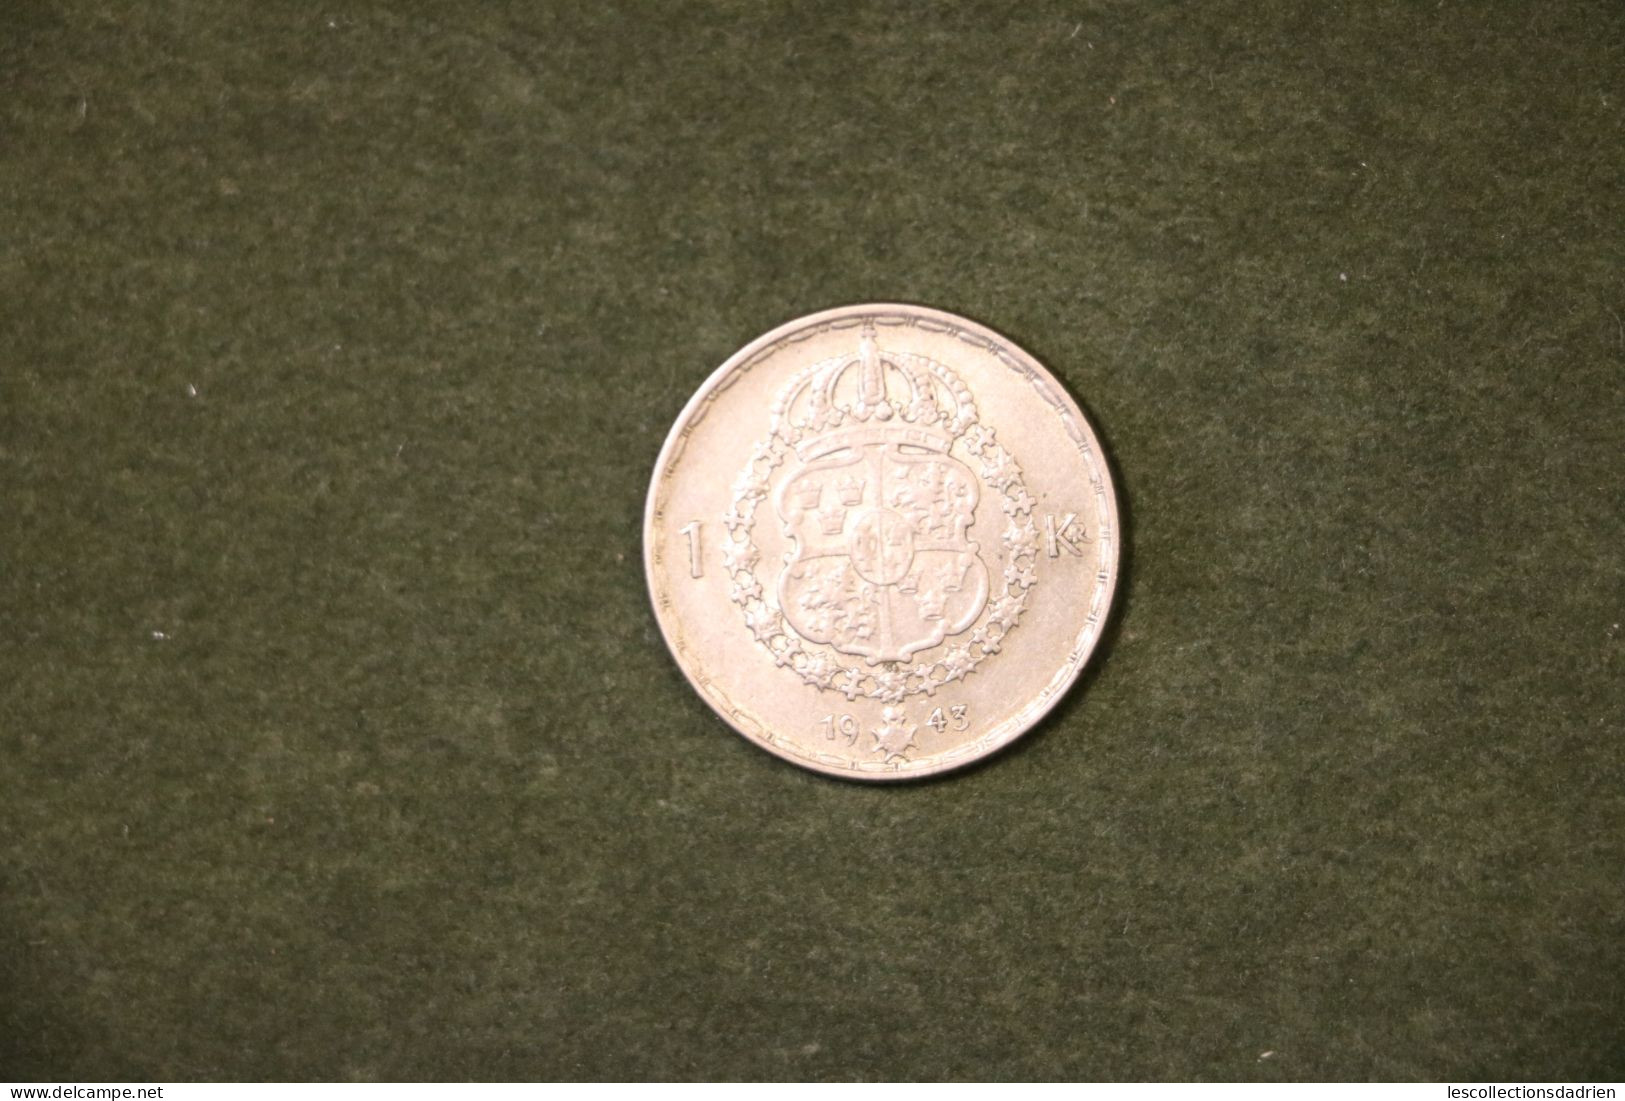 Monnaie Suédoise En Argent 1 Couronne 1943 -  Swedish Silver Coin - Sweden